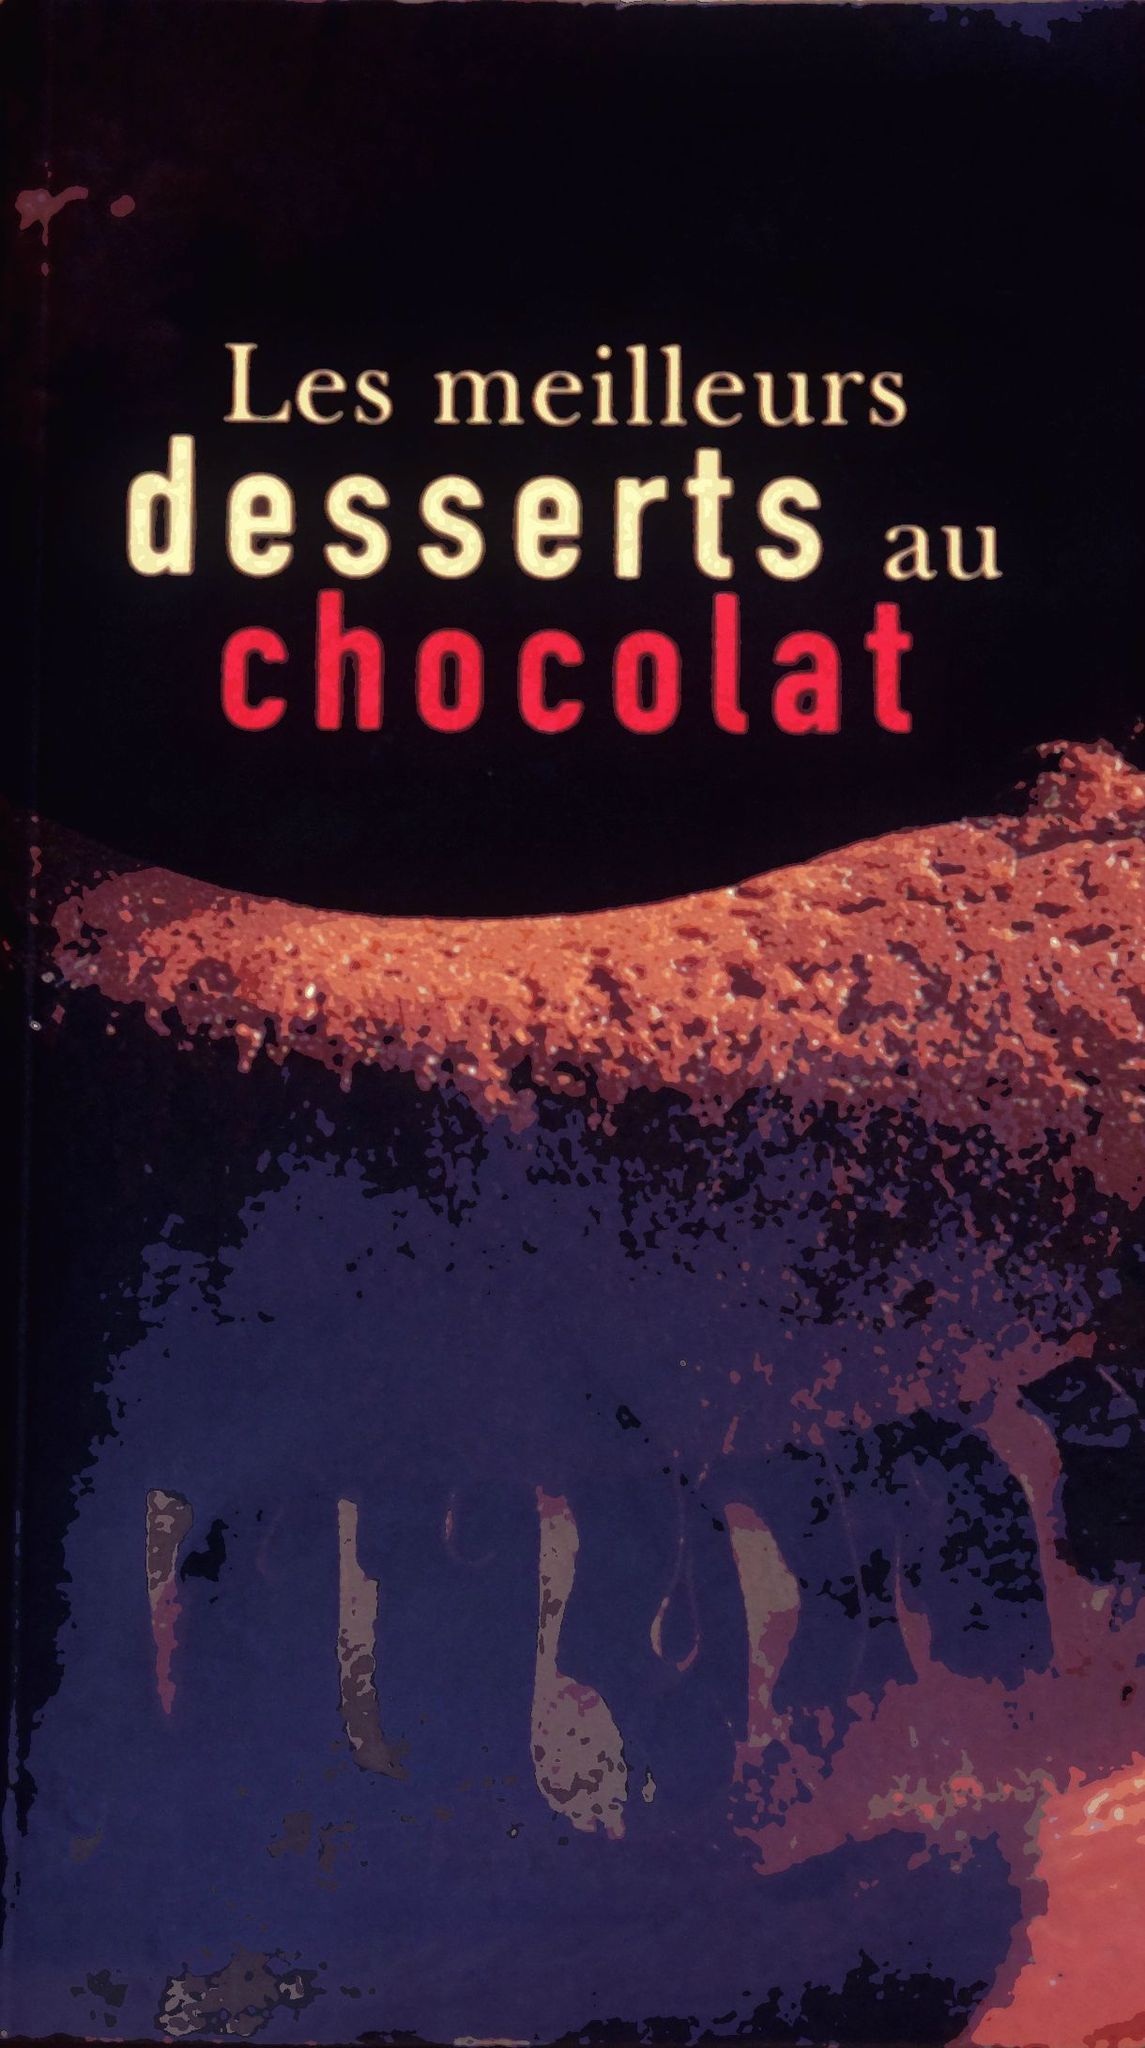 Les meilleurs desserts au chocolat